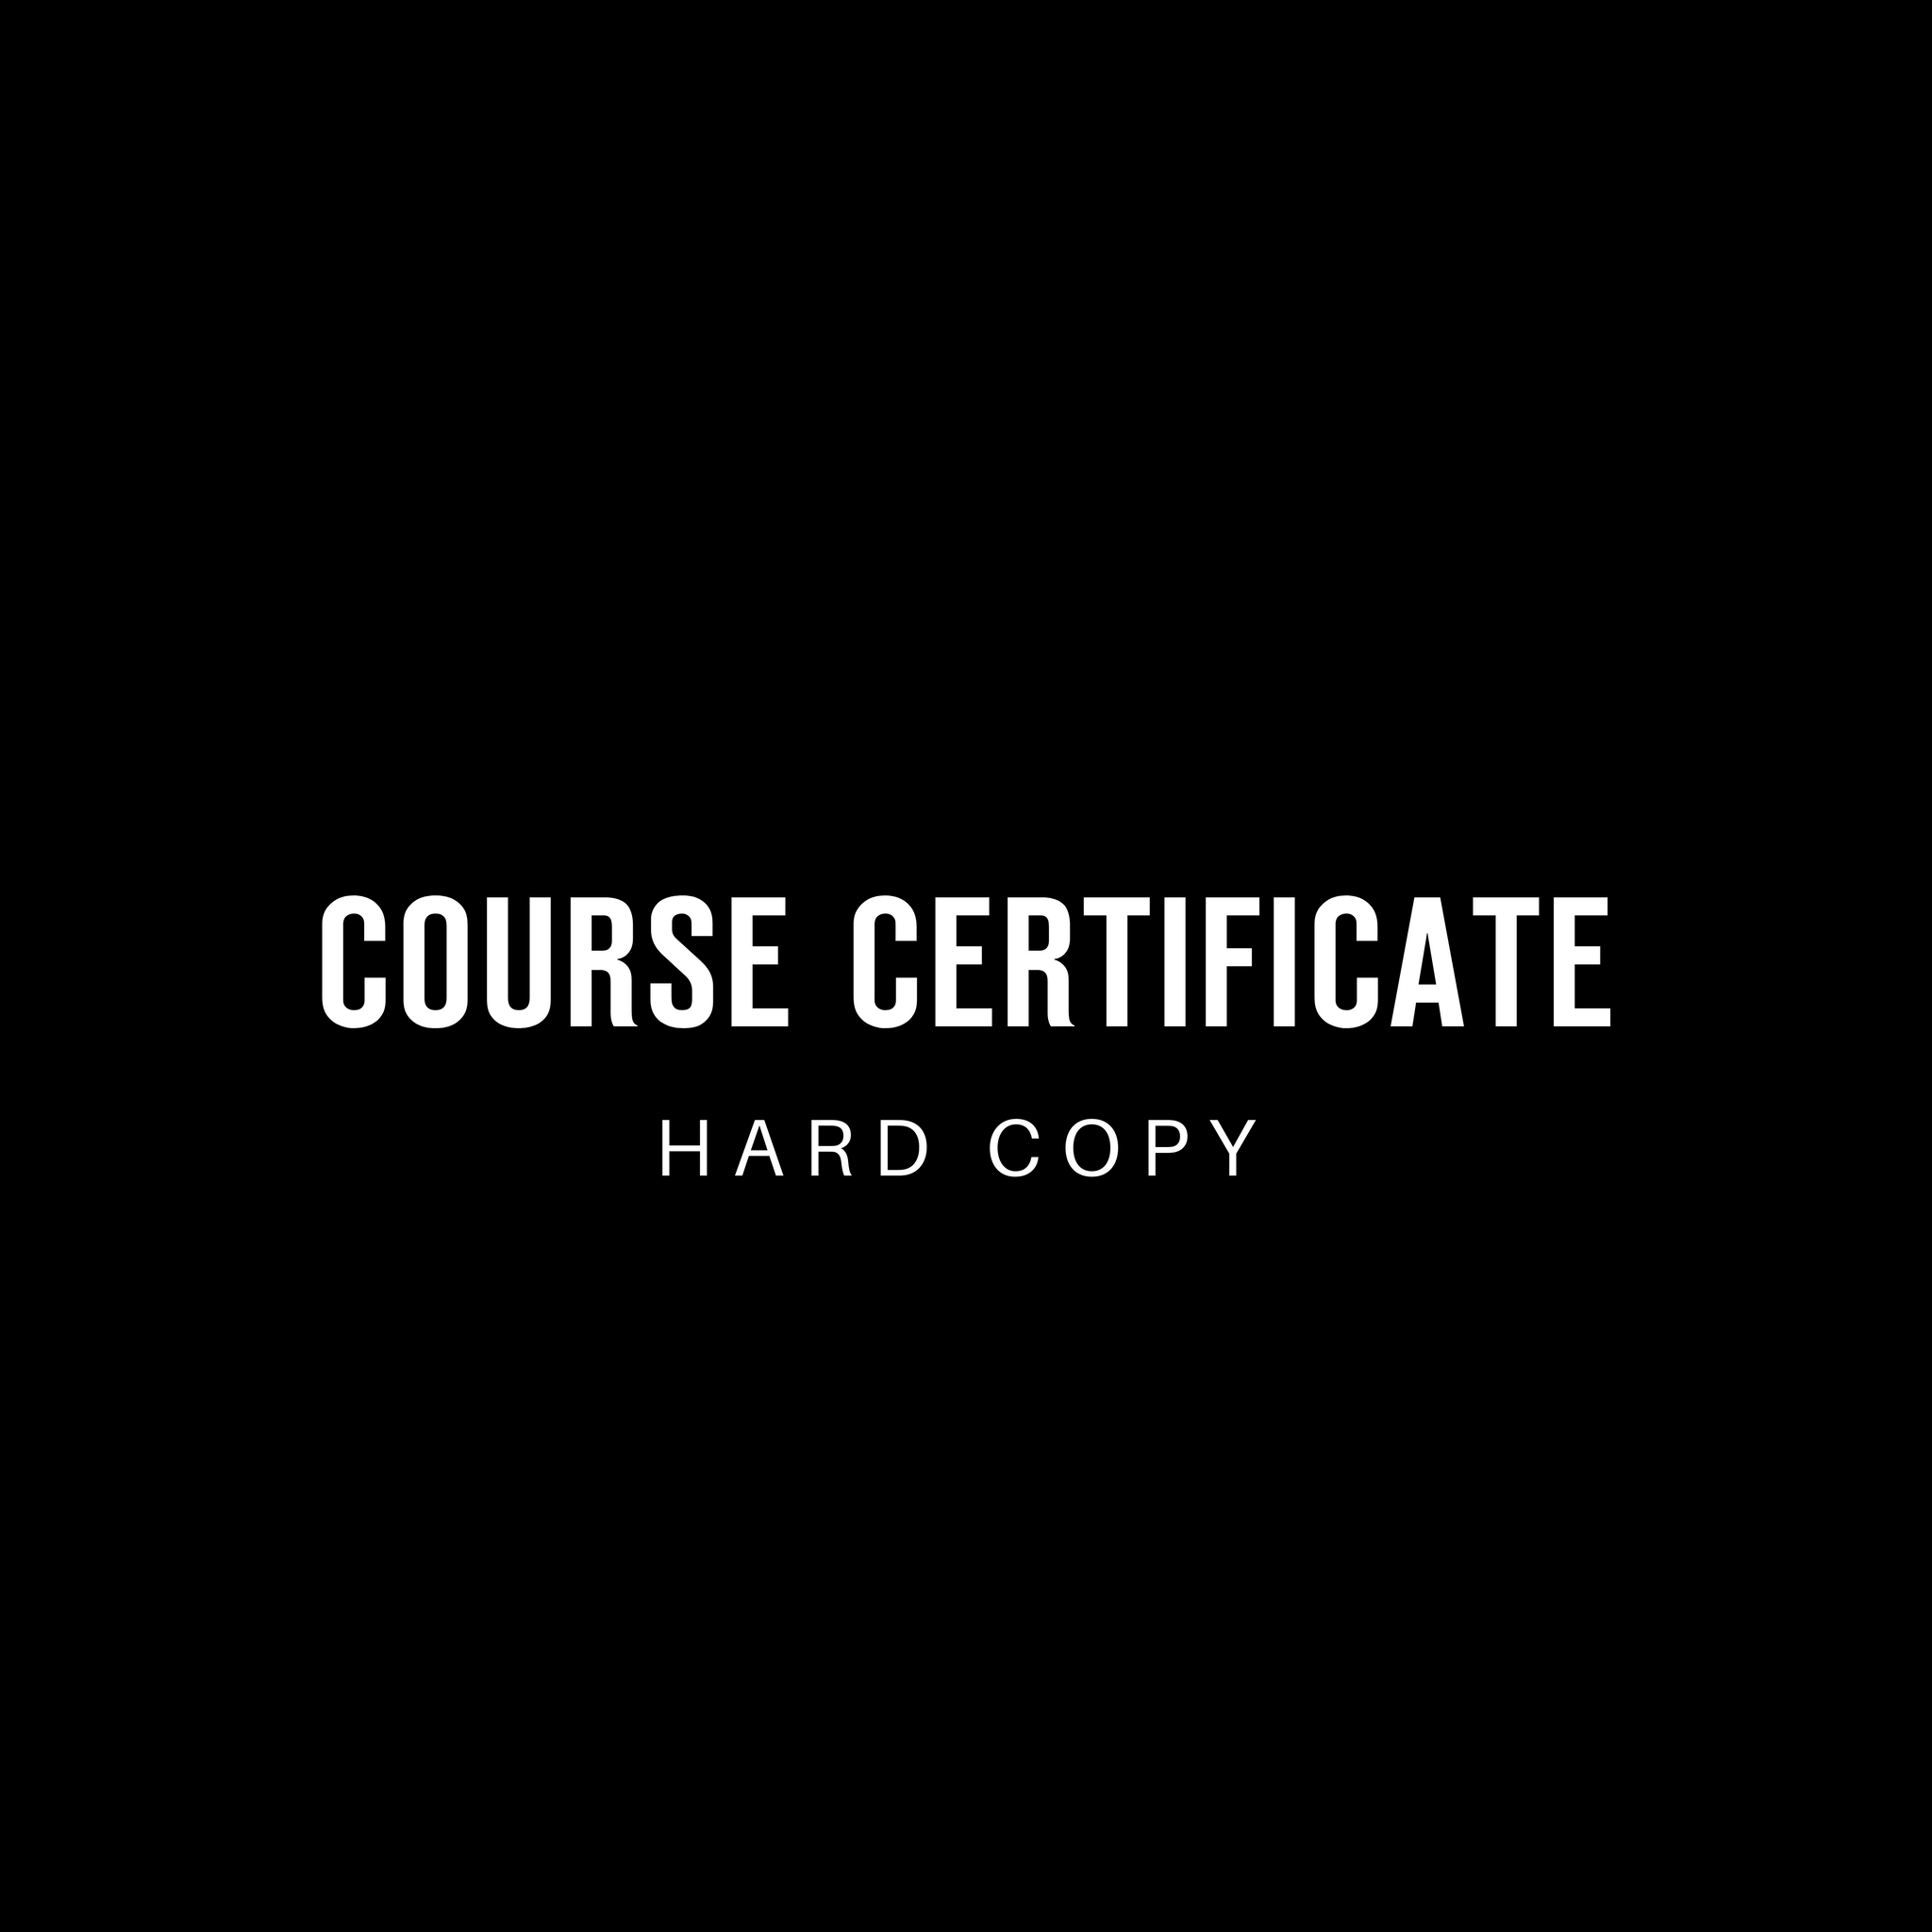 Hard Copy Certificate